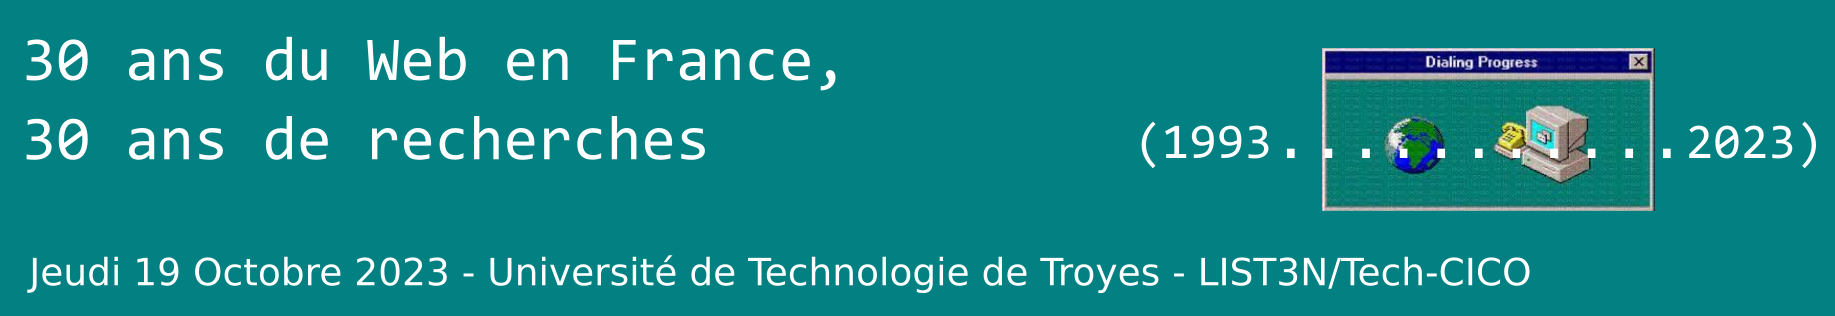 Journée d'étude 30 ans de Web et de recherche sur le Web en France - Jeudi 19 Octobre 2023 - UTT - LIST3N Tech-CICO